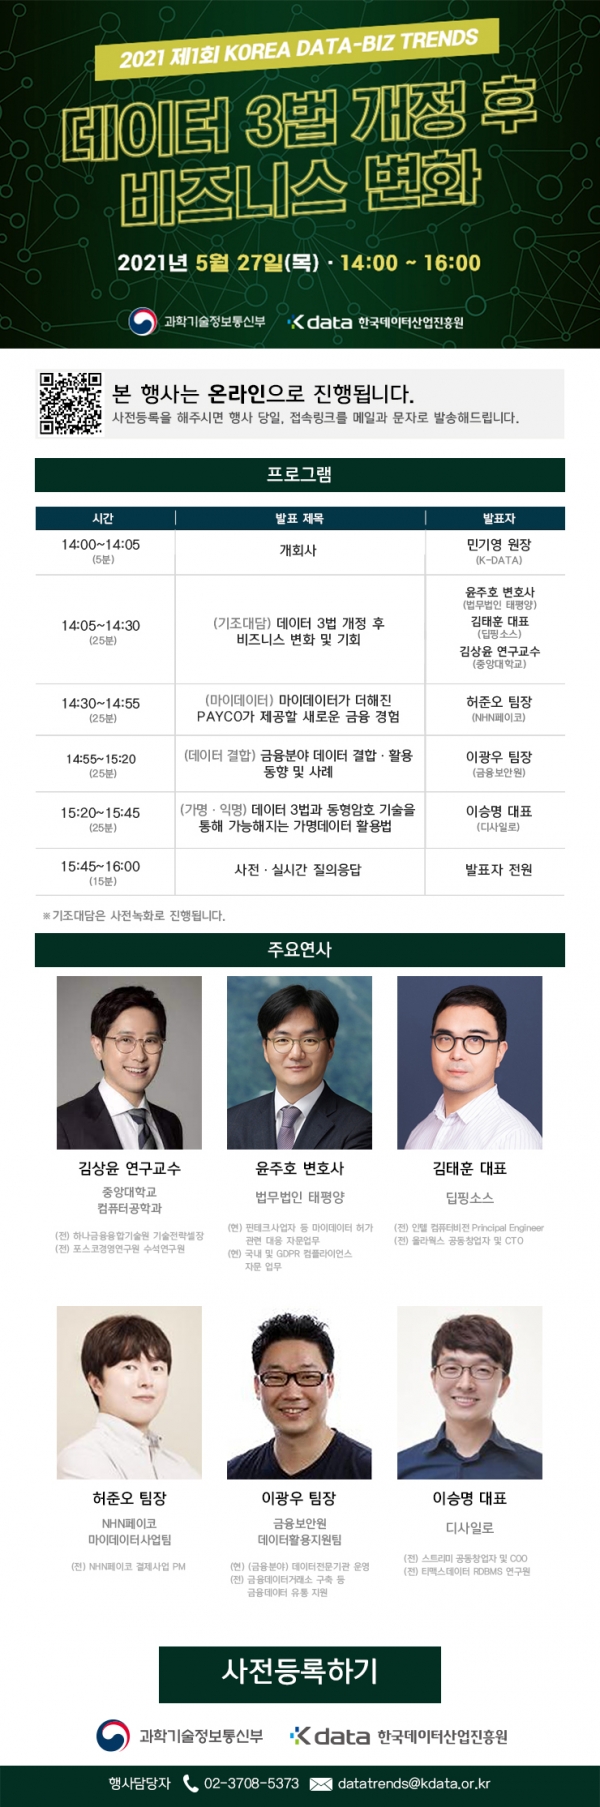 2021 제1회 KOREA DATA-BIZ TRENDS 행사 포스터